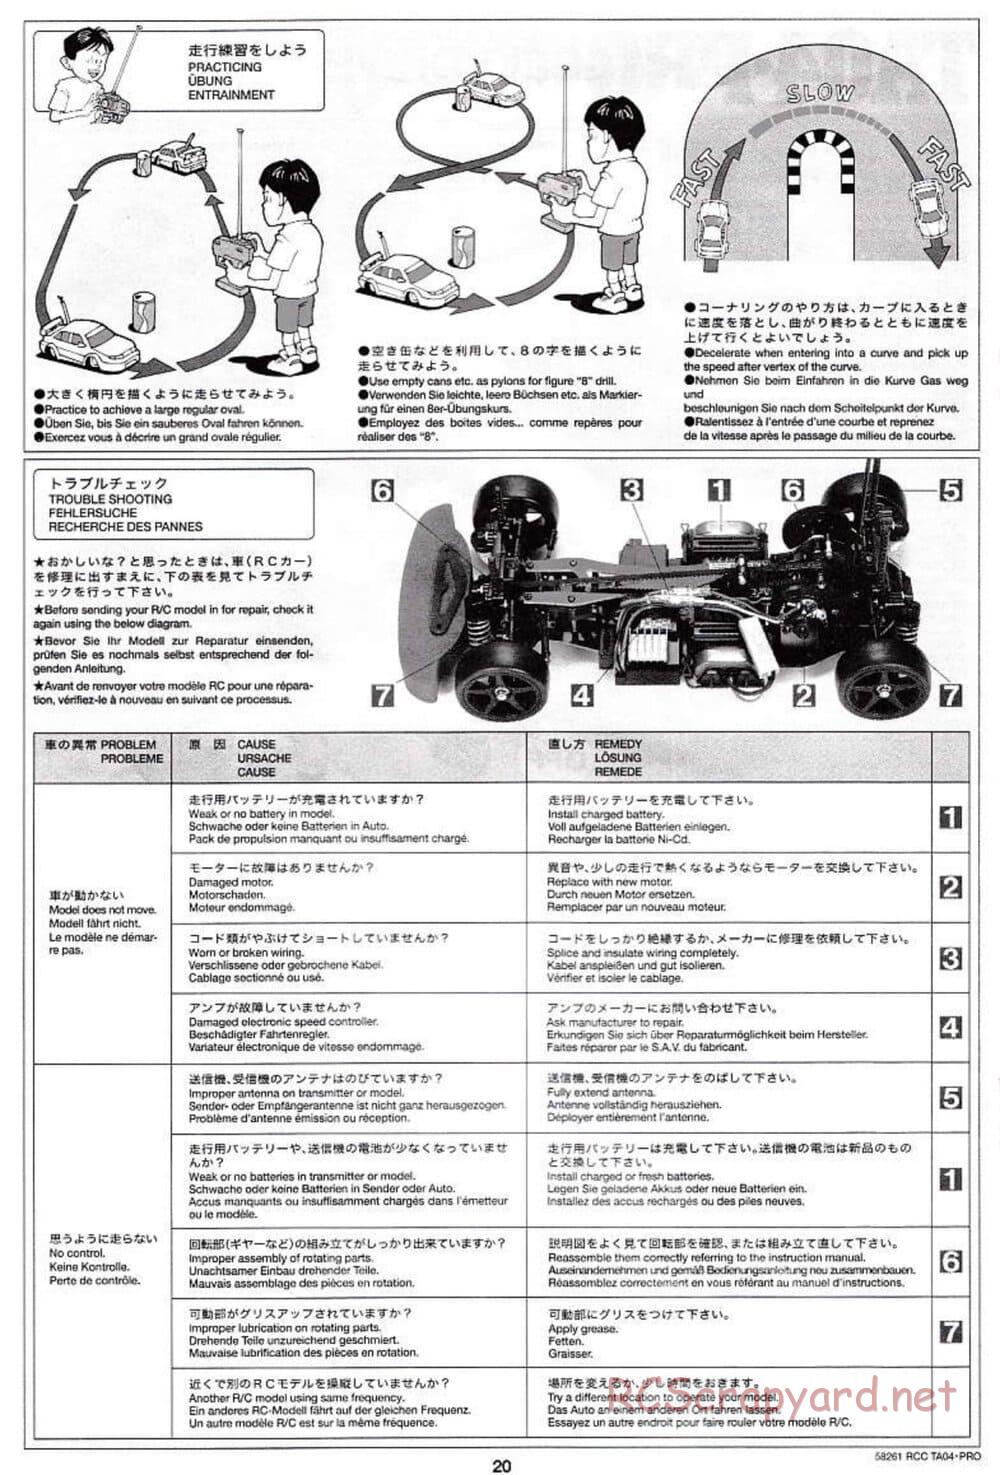 Tamiya - TA-04 Pro Chassis - Manual - Page 20